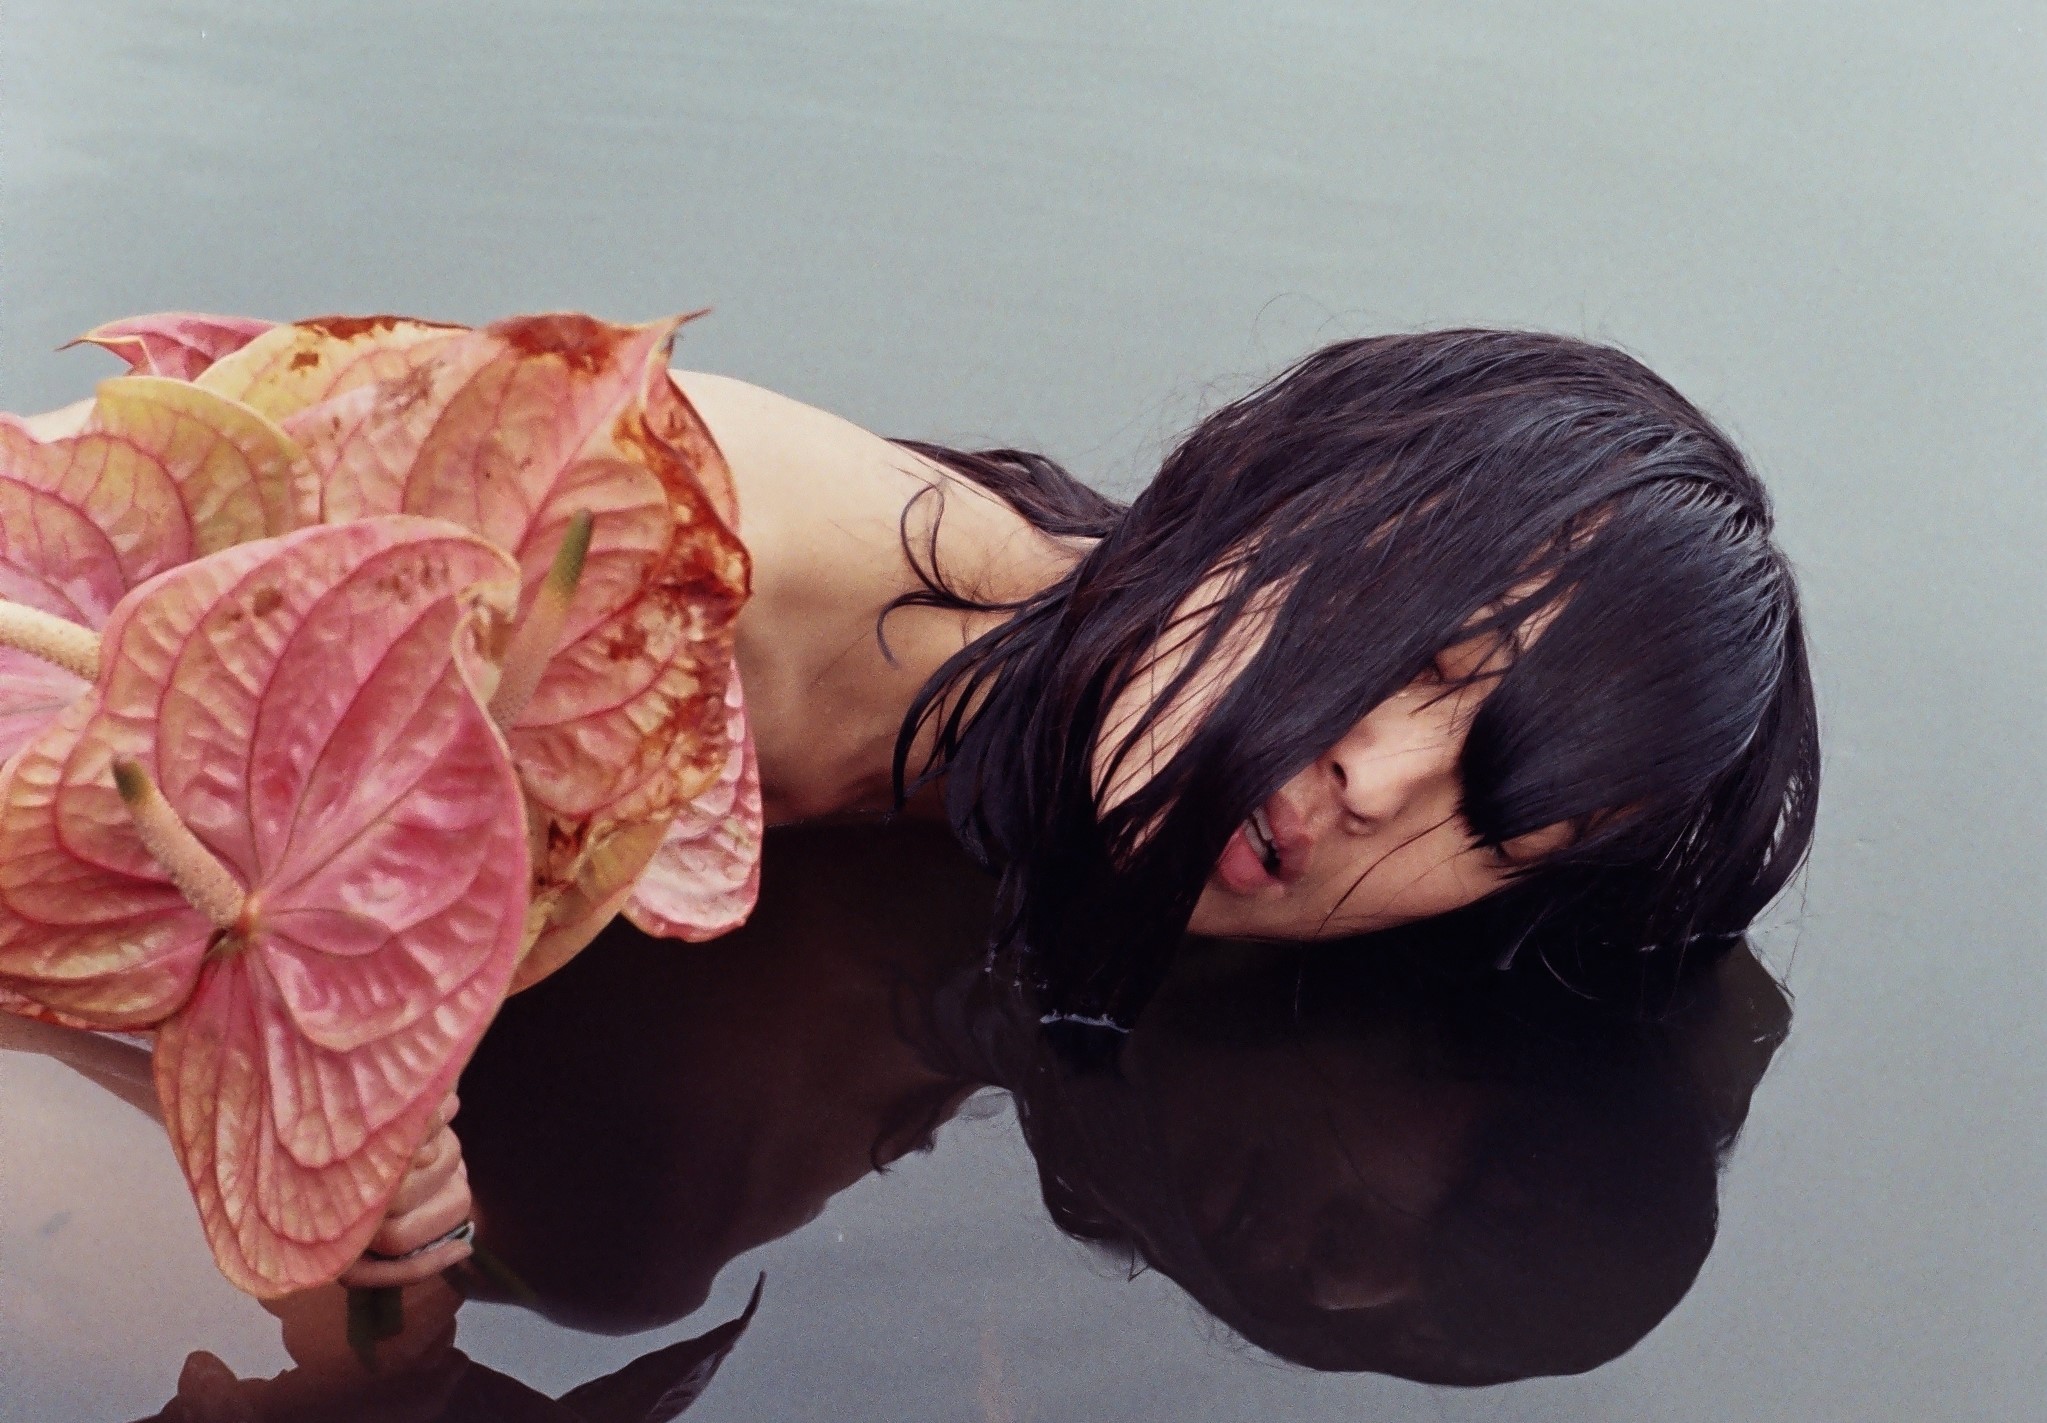 Al momento stai visualizzando Agua, il libro fotografico di Denisse Ariana Pérez